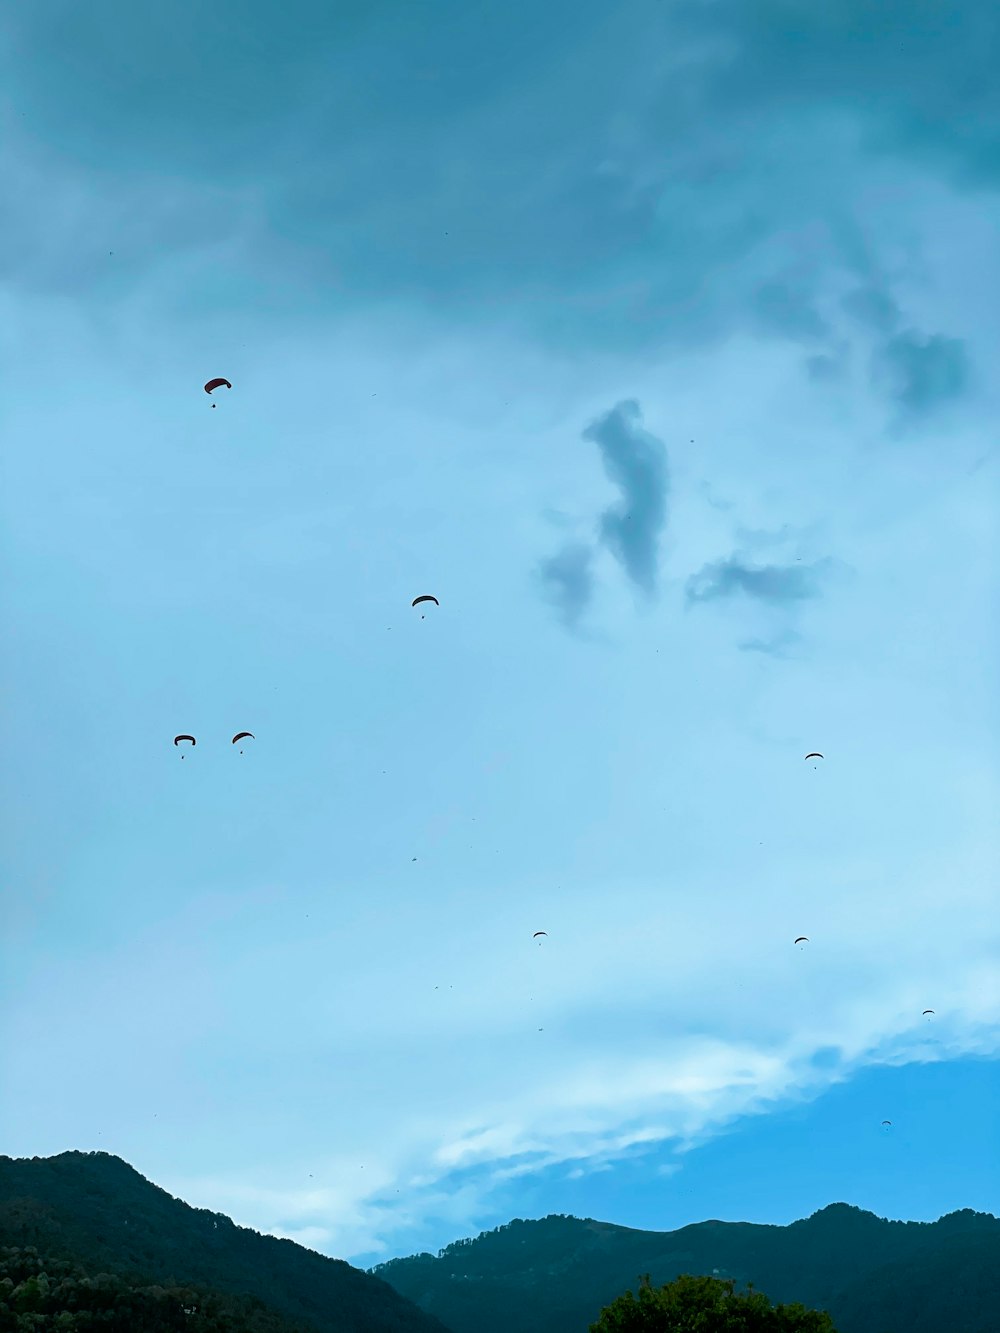 silueta de pájaros volando bajo el cielo nublado durante el día